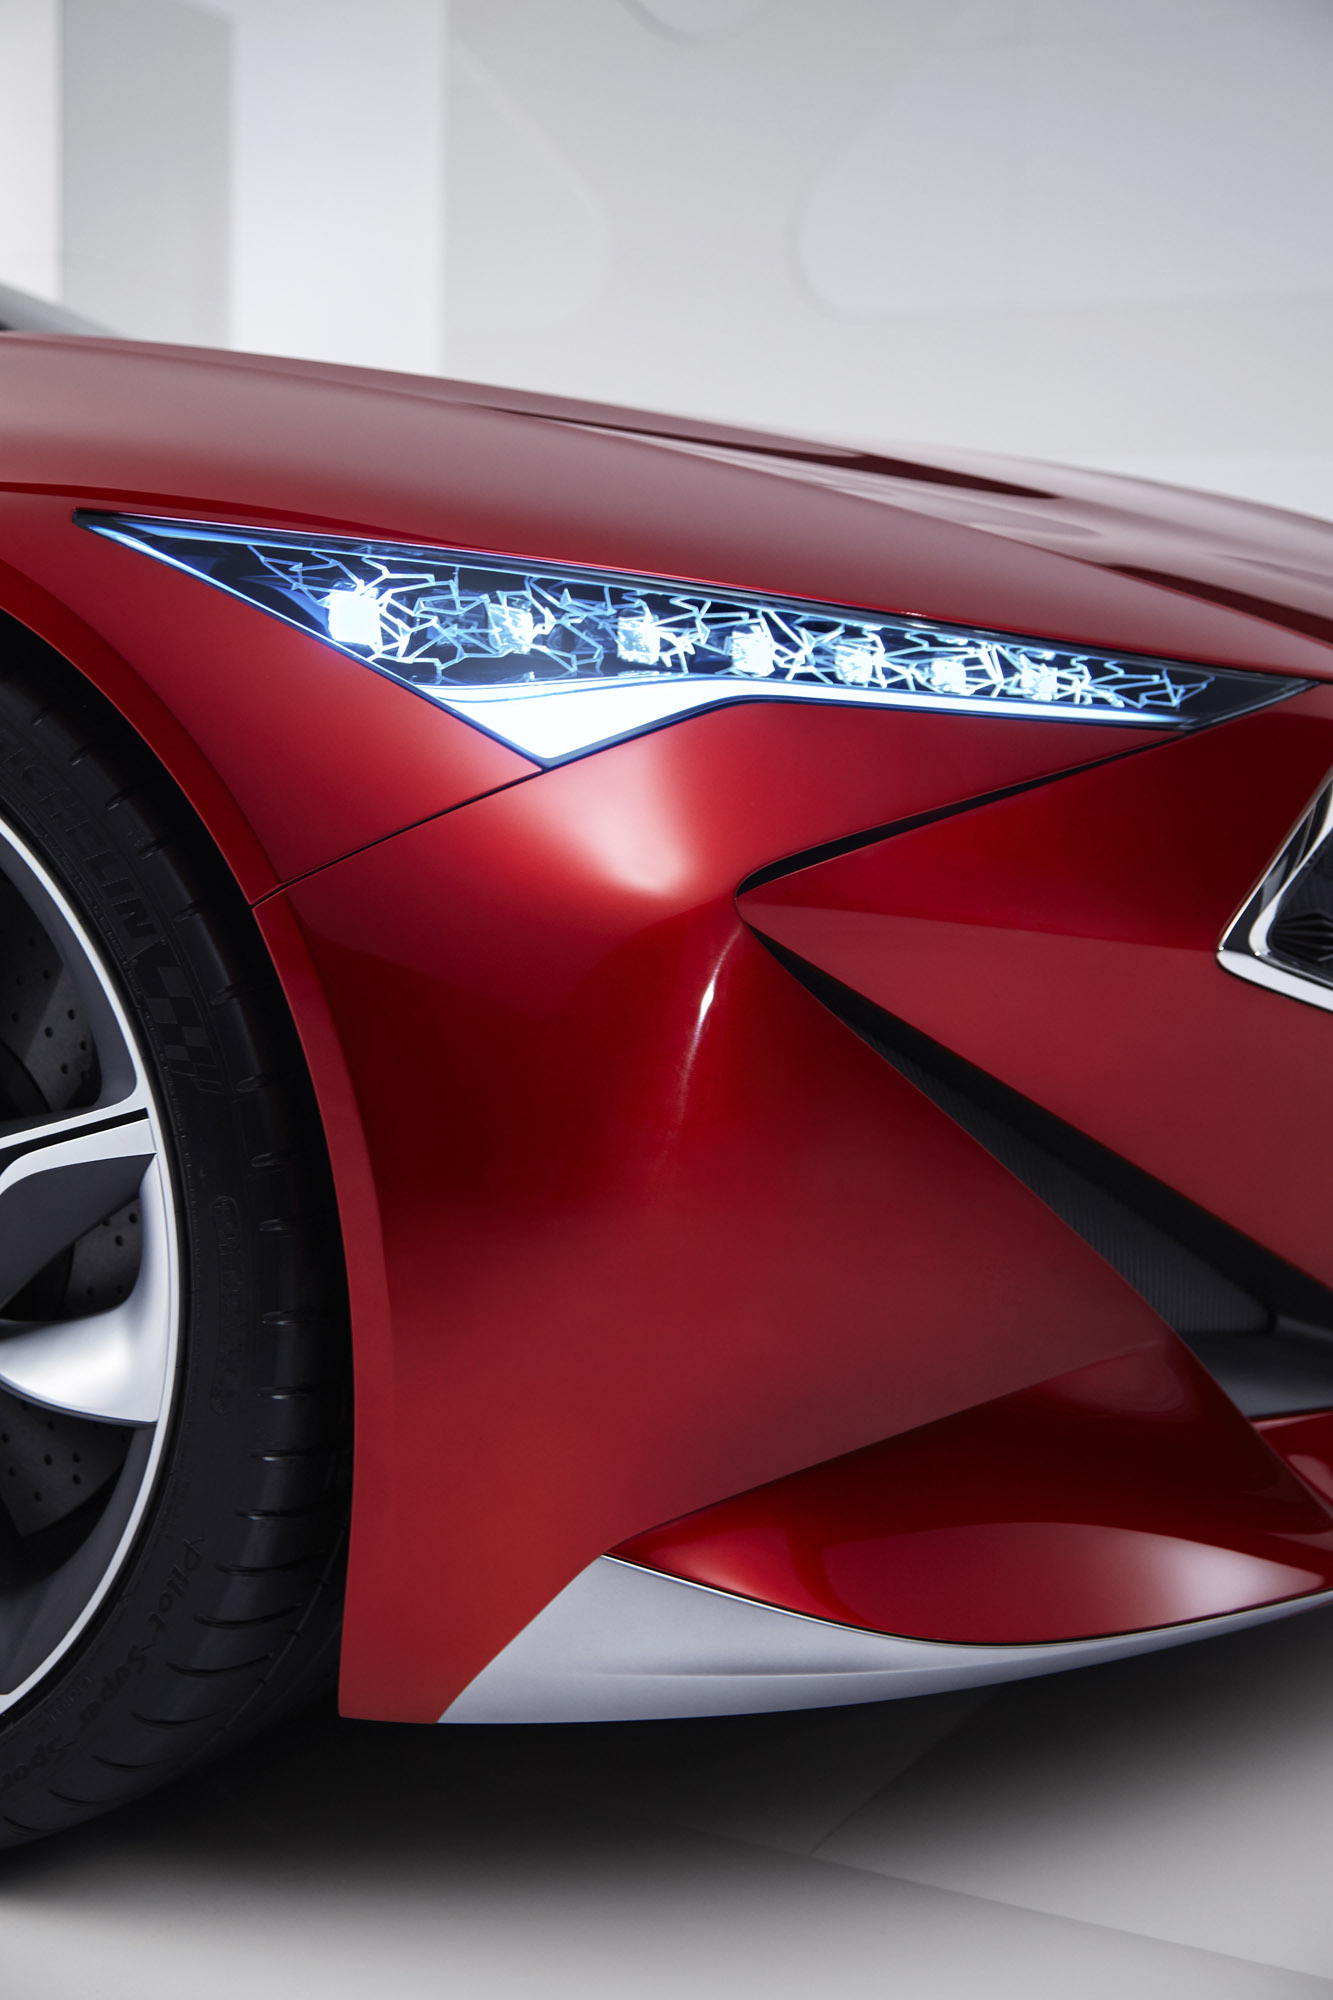 Acura Precision Concept Makes Official Debut at NAIAS